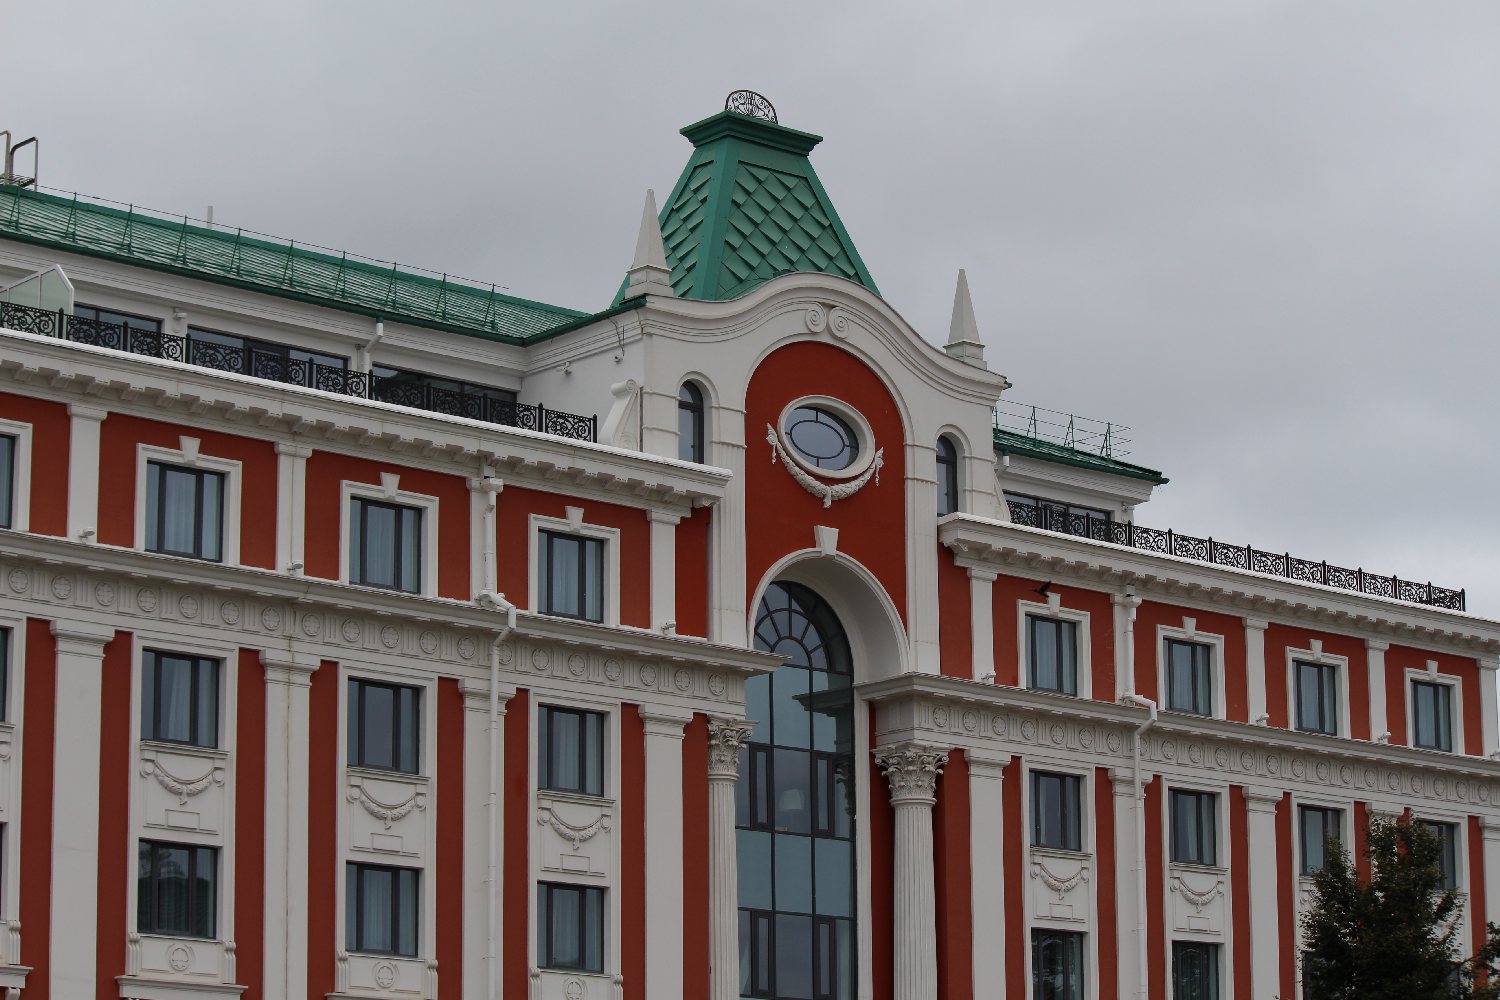 Пятизвездочный отель Sheraton открылся в Нижнем Новгороде (ФОТО) - фото 4